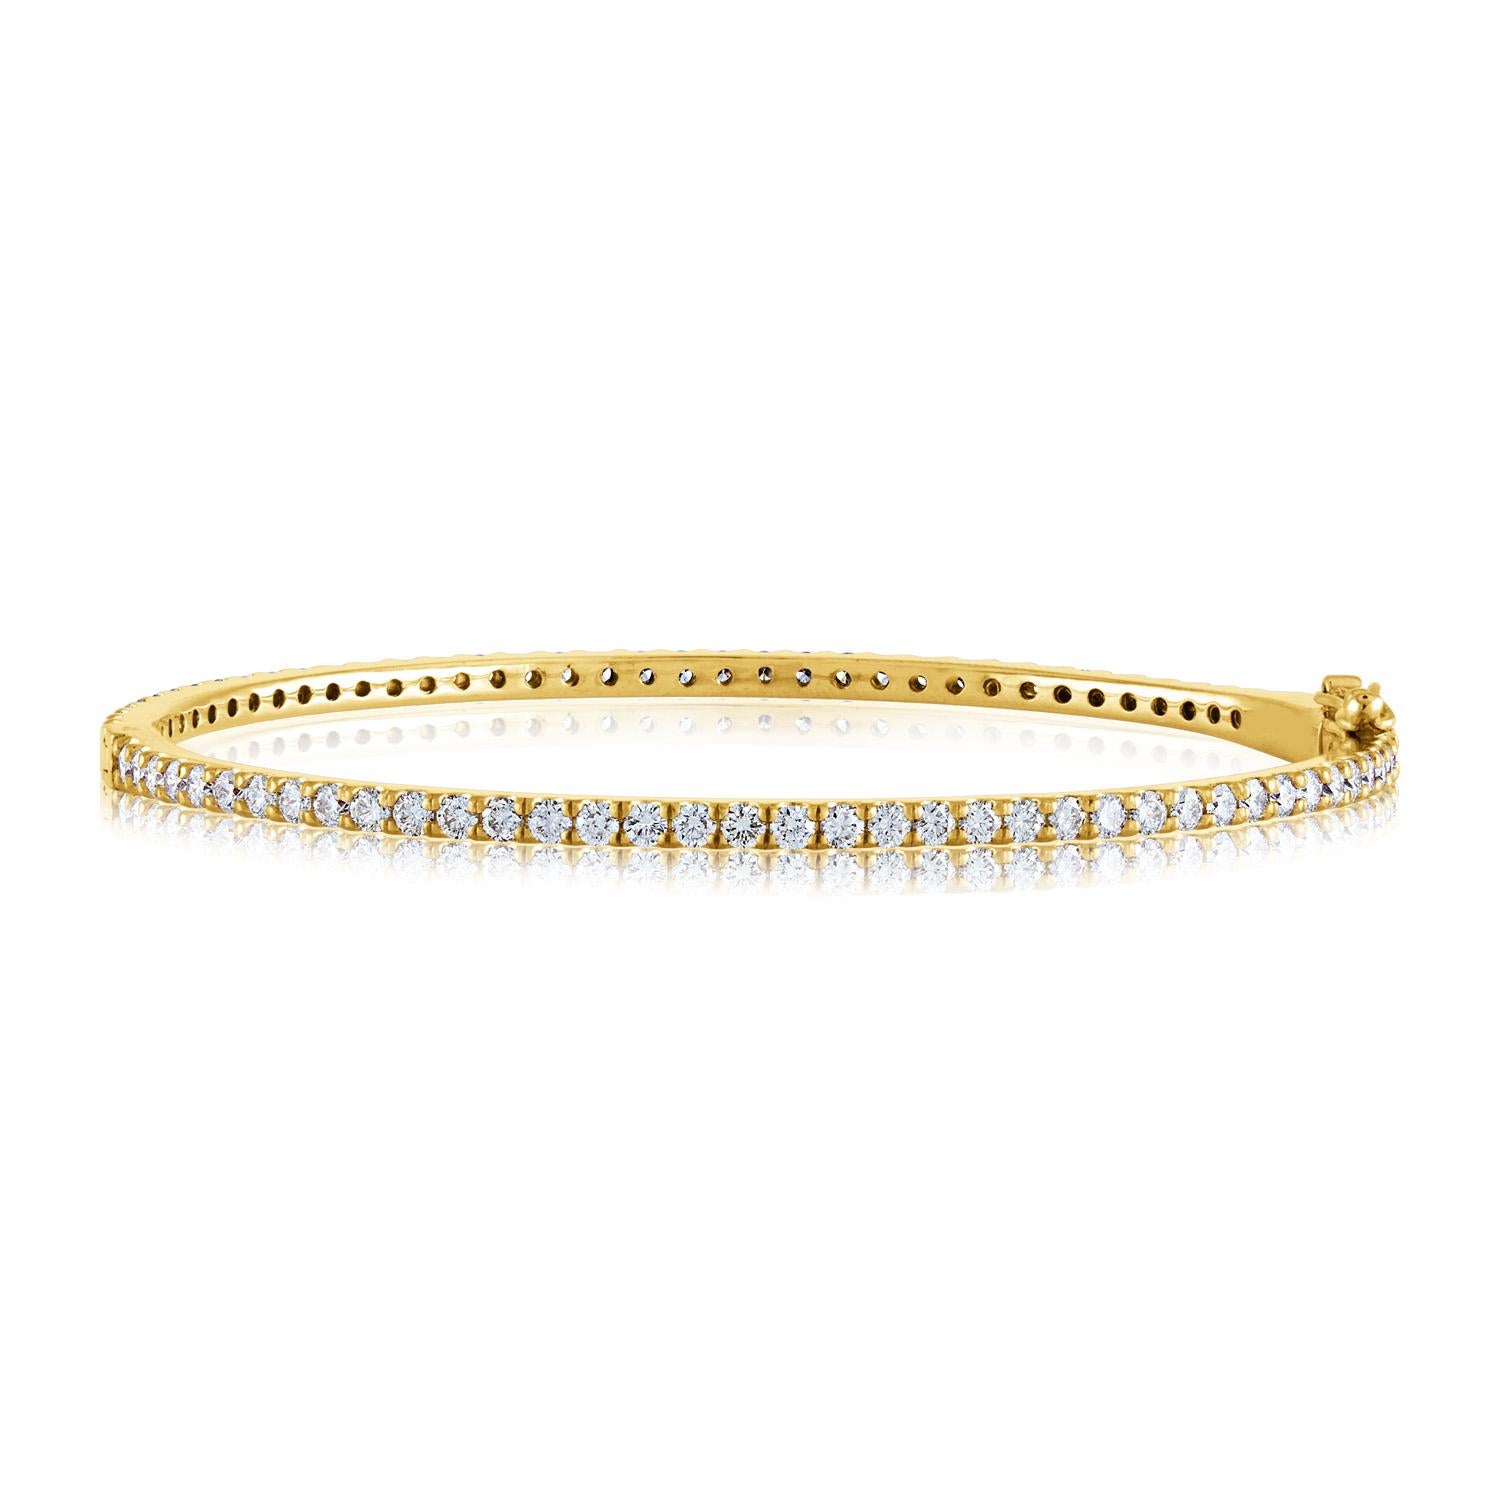 Rundum-Diamant-Gold-Armspange
Das Armband ist 14K Rose Gold oder Gelbgold
Es gibt 2,40 Karat in Diamanten F/G VS/SI
Passt für Handgelenke bis zu 6,50 Zoll.
Das Armband wiegt 9,9 Gramm
Erhältlich in Roségold  oder Gelbgold
Bitte geben Sie bei der